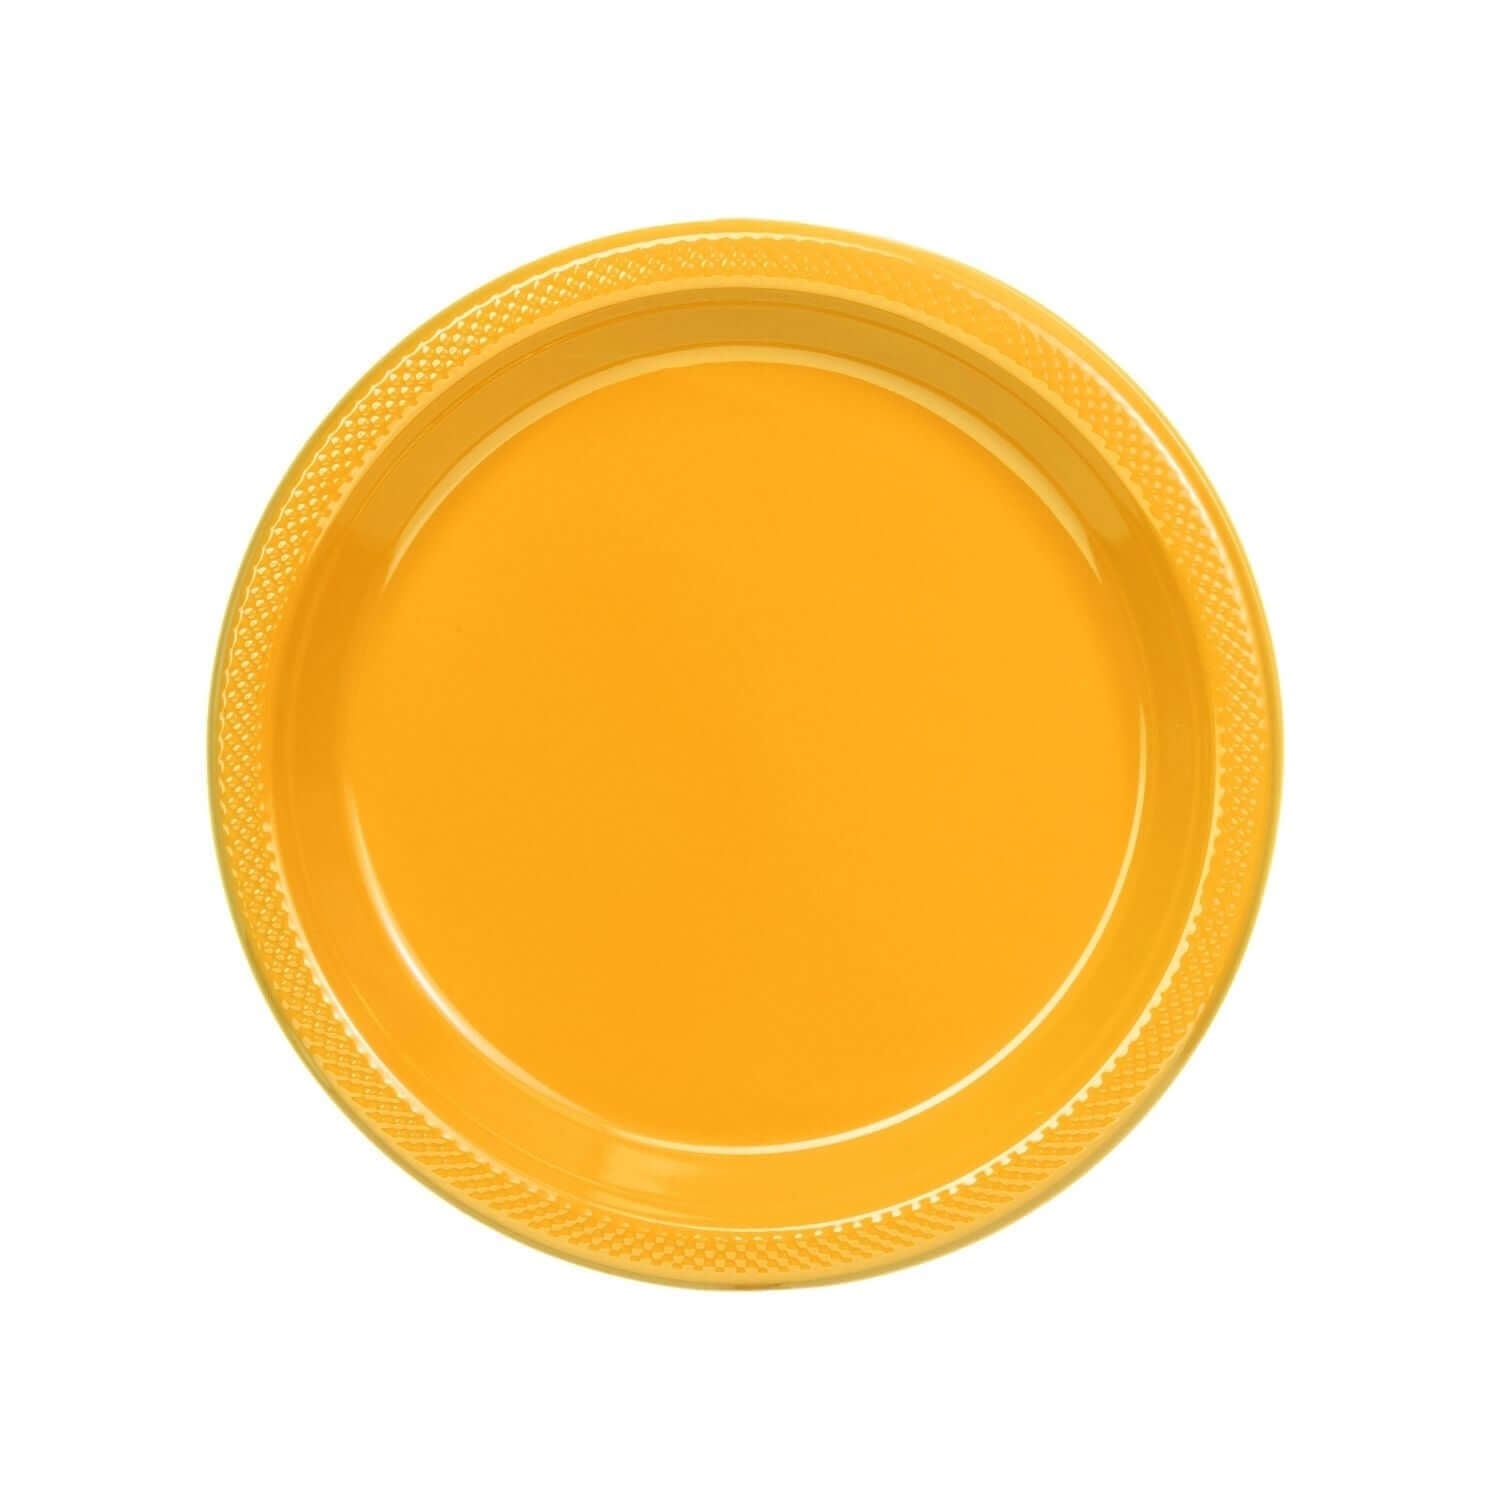 7" | Yellow Plastic Plates | 600 Count - Yom Tov Settings